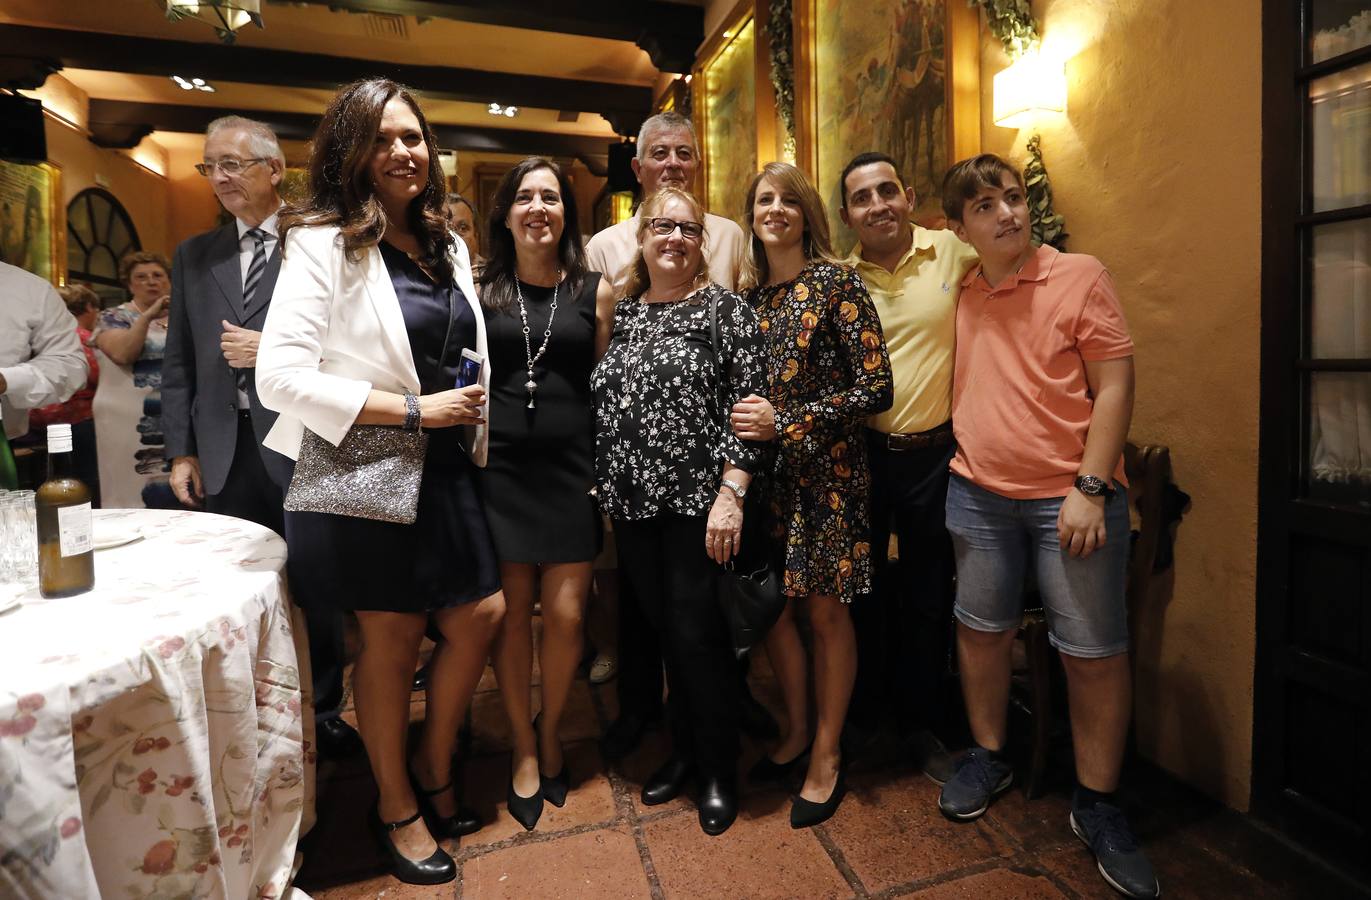 La entrega de premios del Banco de Alimentos de Córdoba, en imágenes